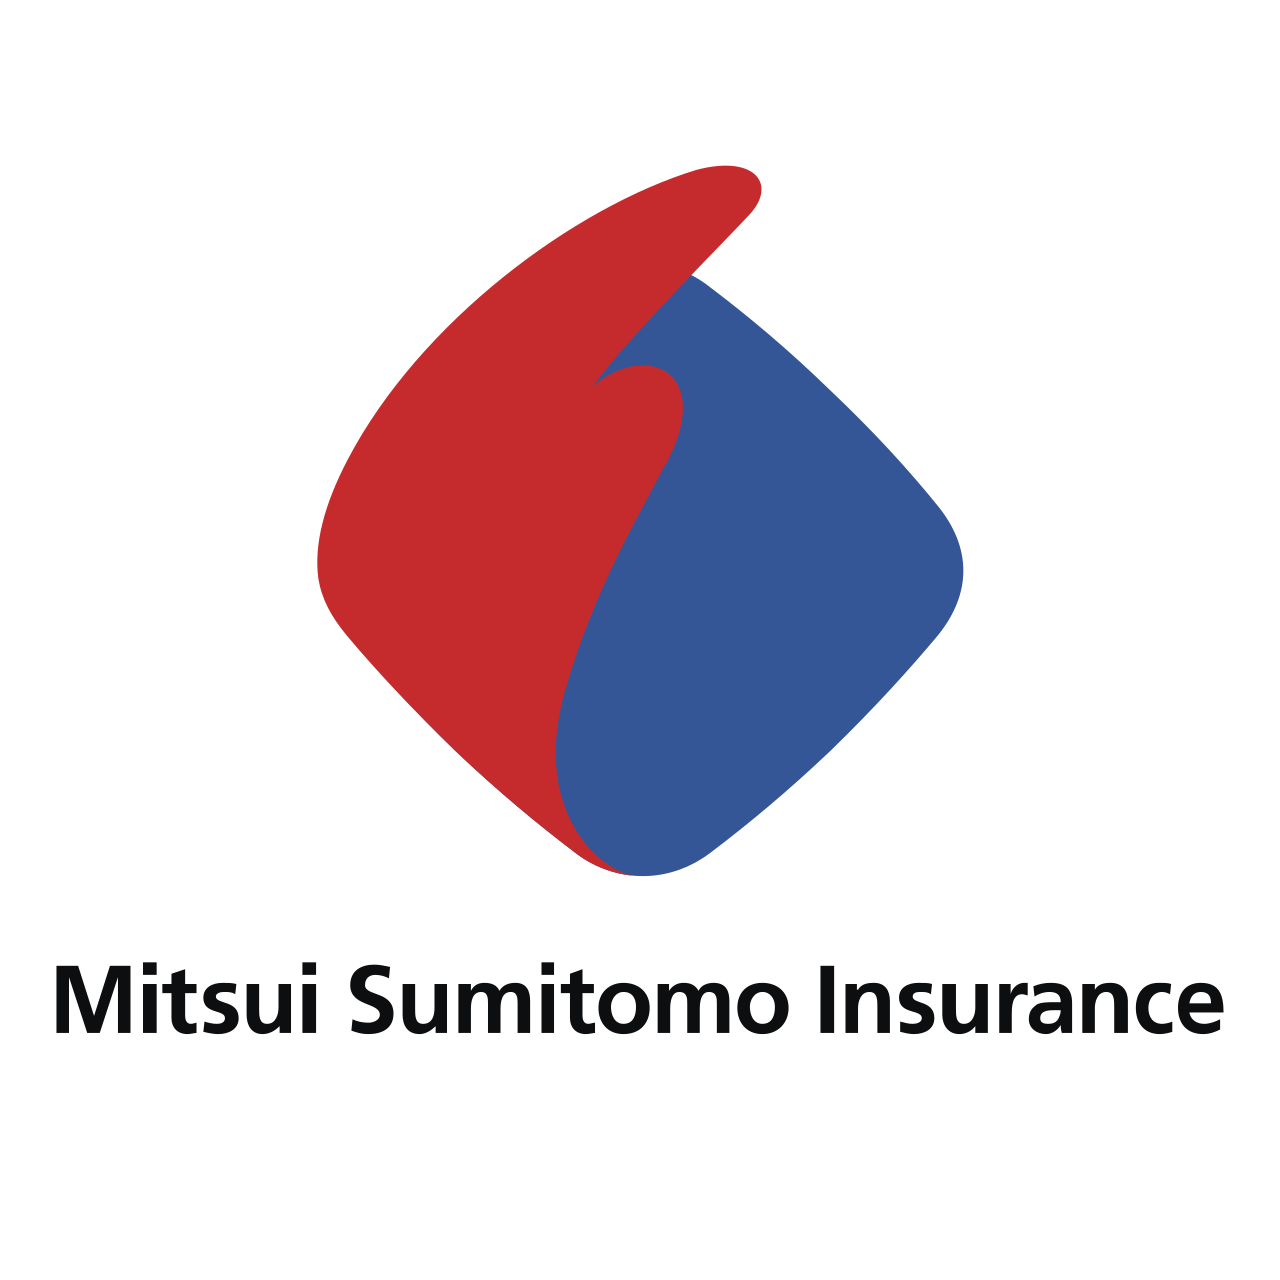 1609326561mitsui-sumitomo-insurance.png